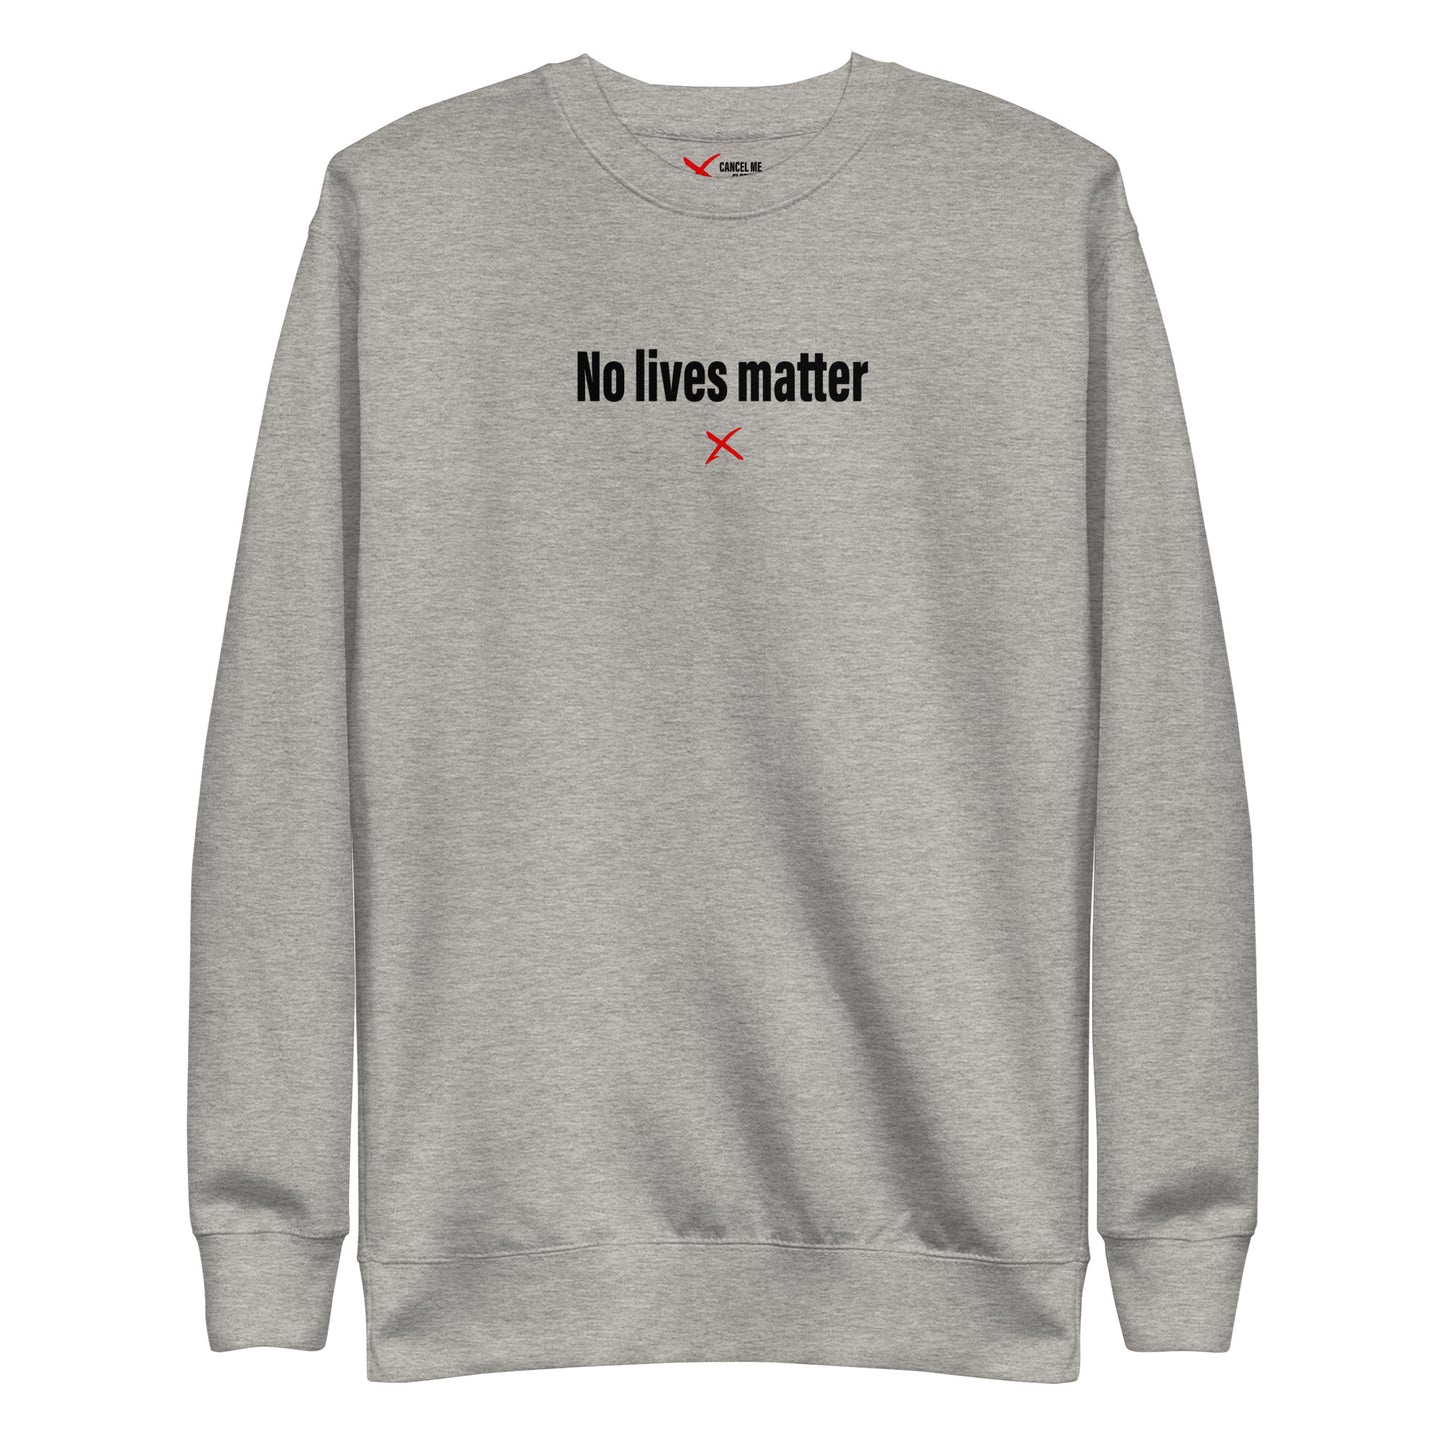 No lives matter - Sweatshirt